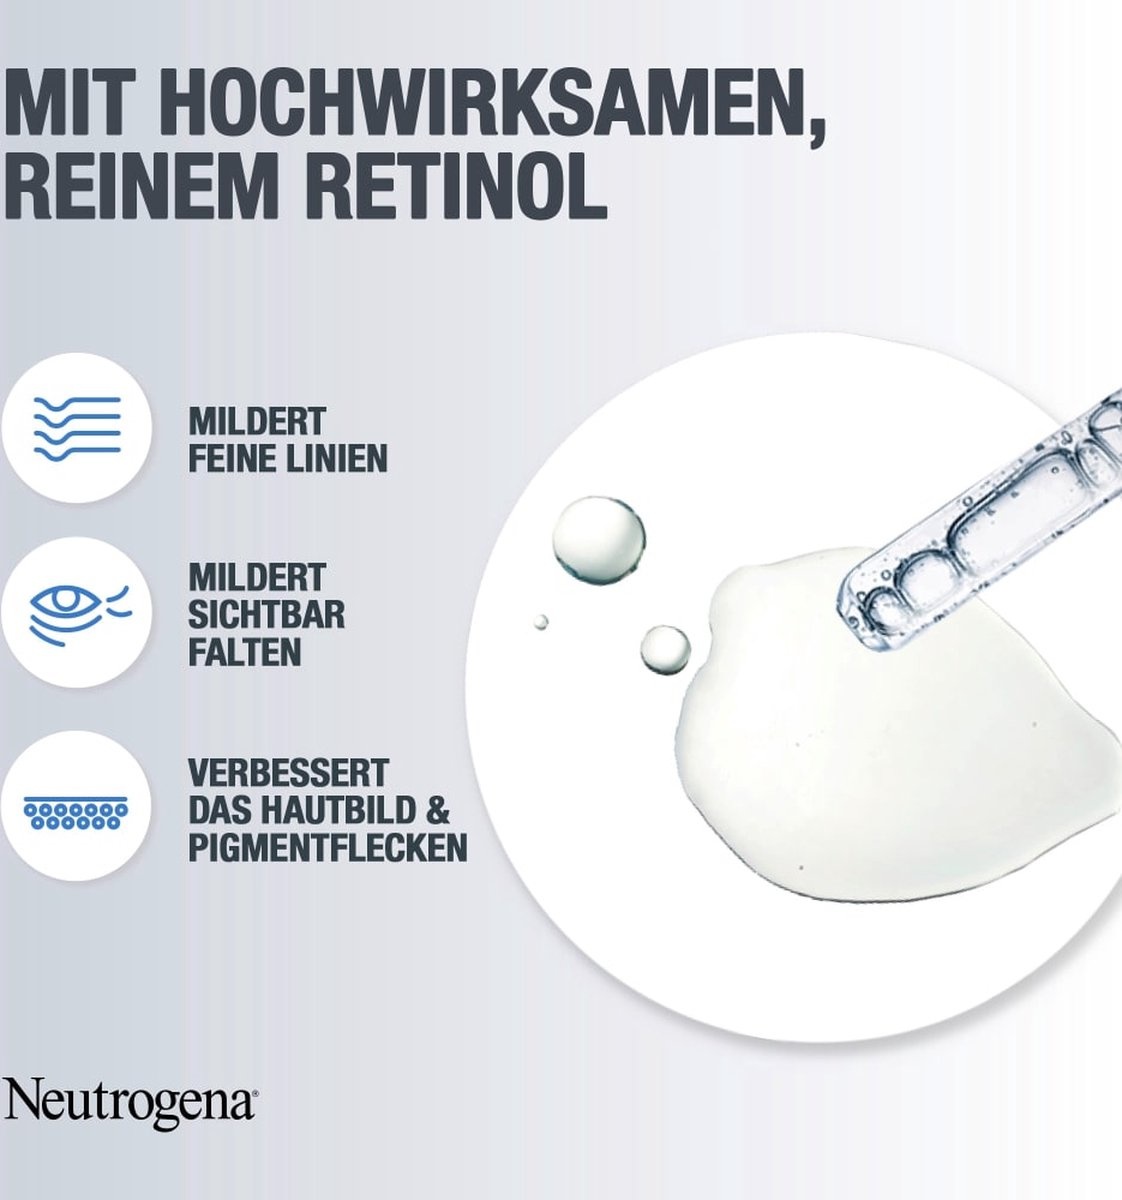 Neutrogena Anti-Age Retinol Boost Oogcrème - 15ml